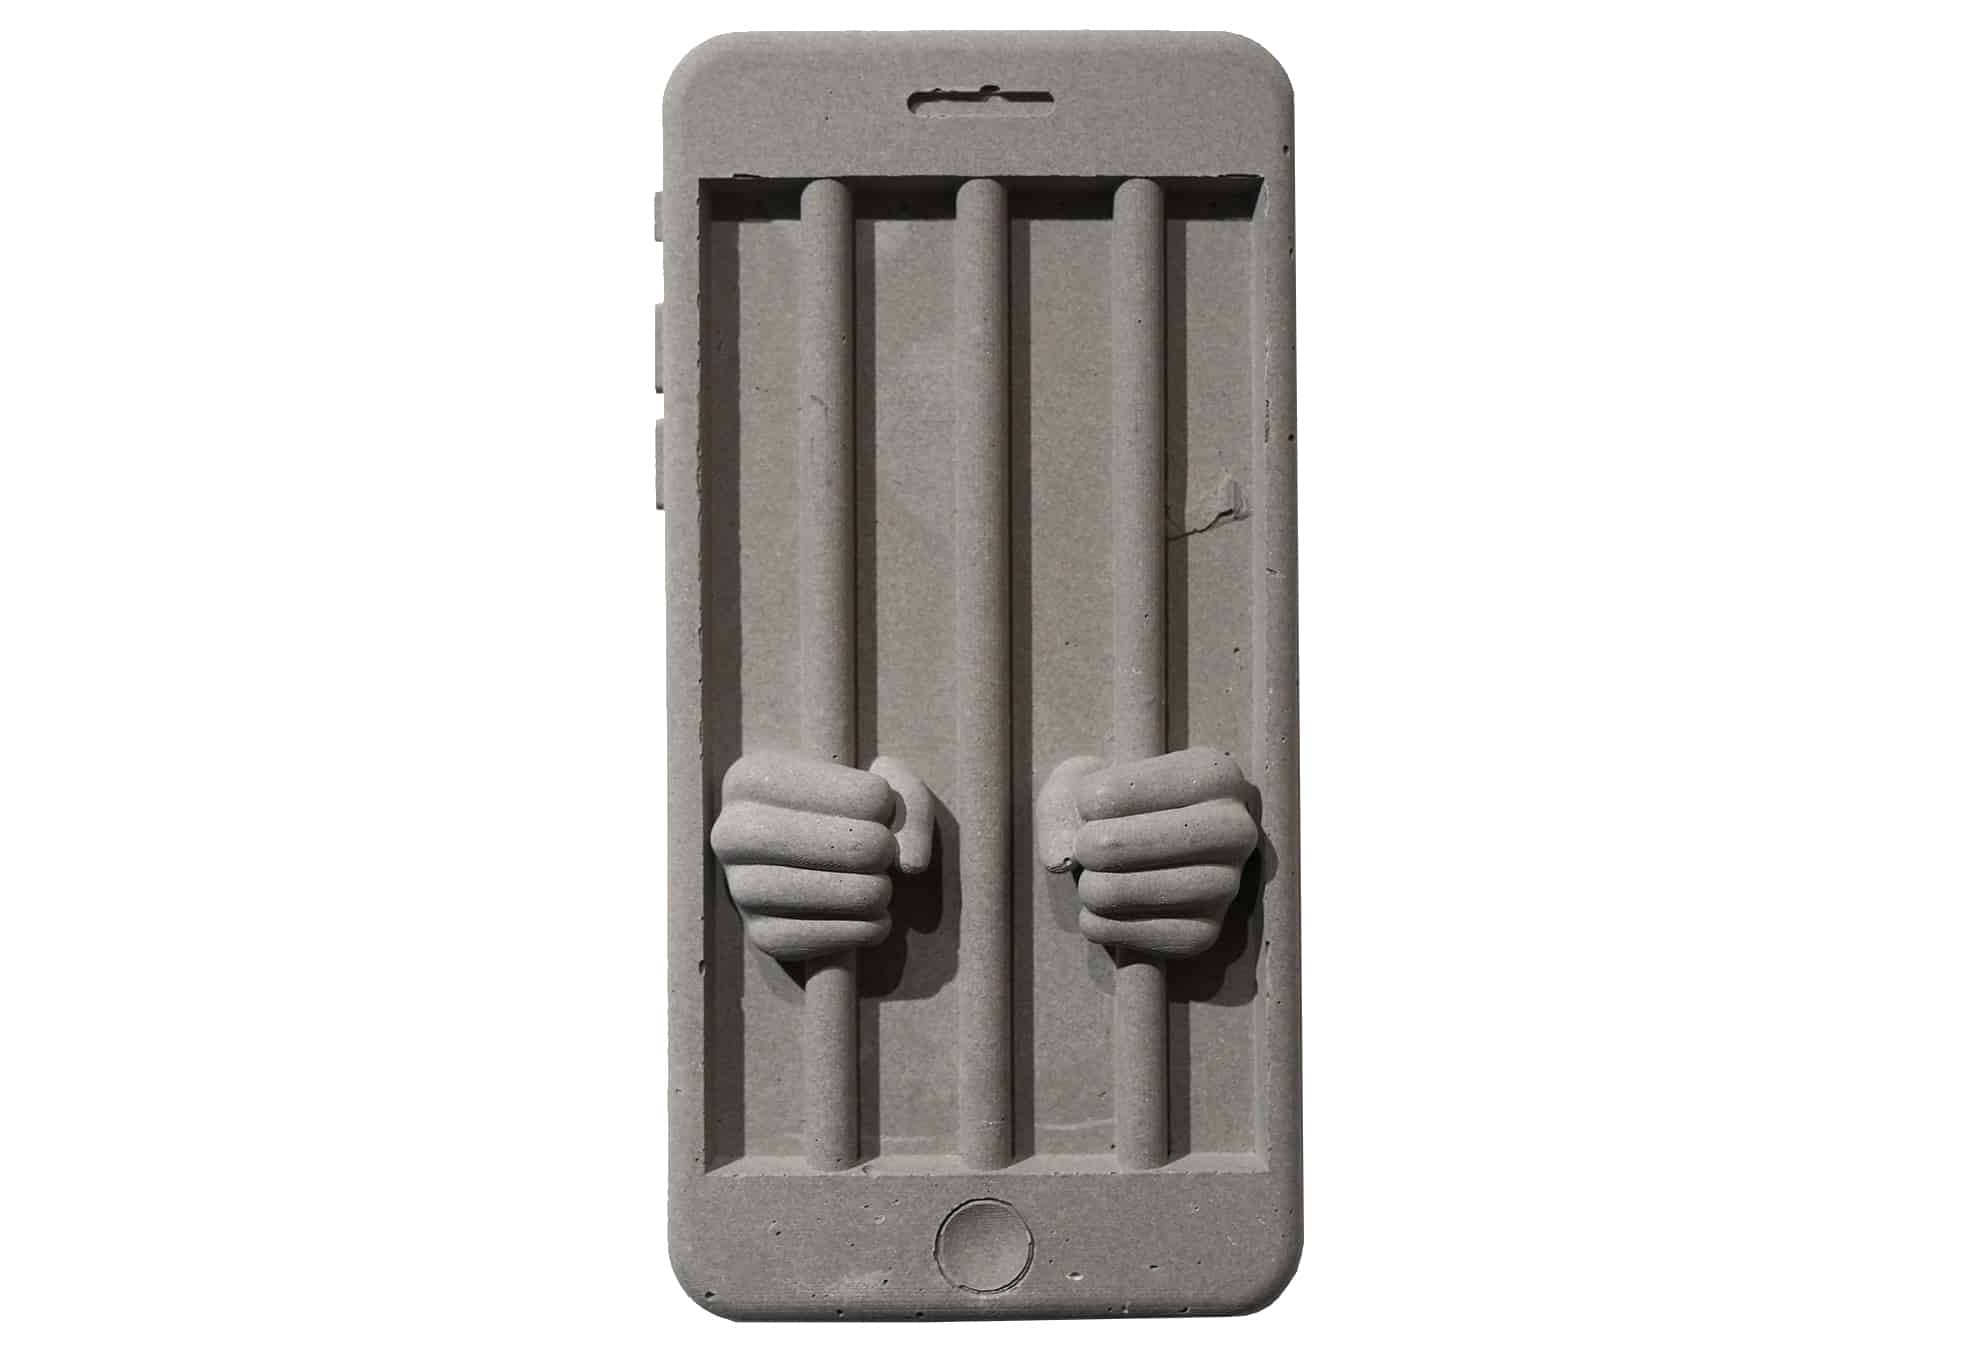 Cell Phone concrete sculpture